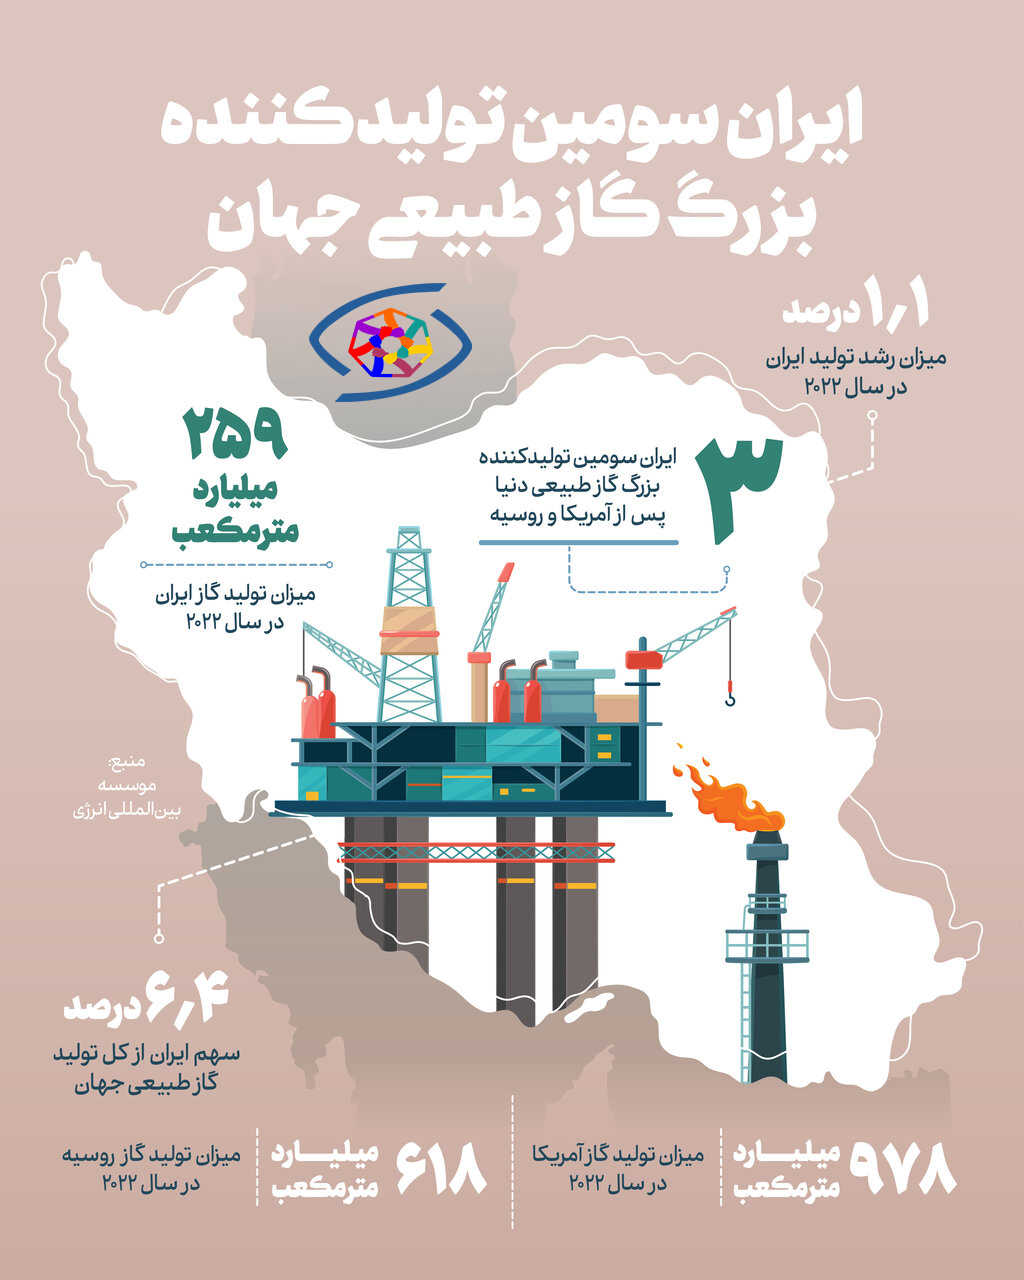 اینفوگرافیک؛ ایران سومین تولیدکننده گاز جهان + جزئیات